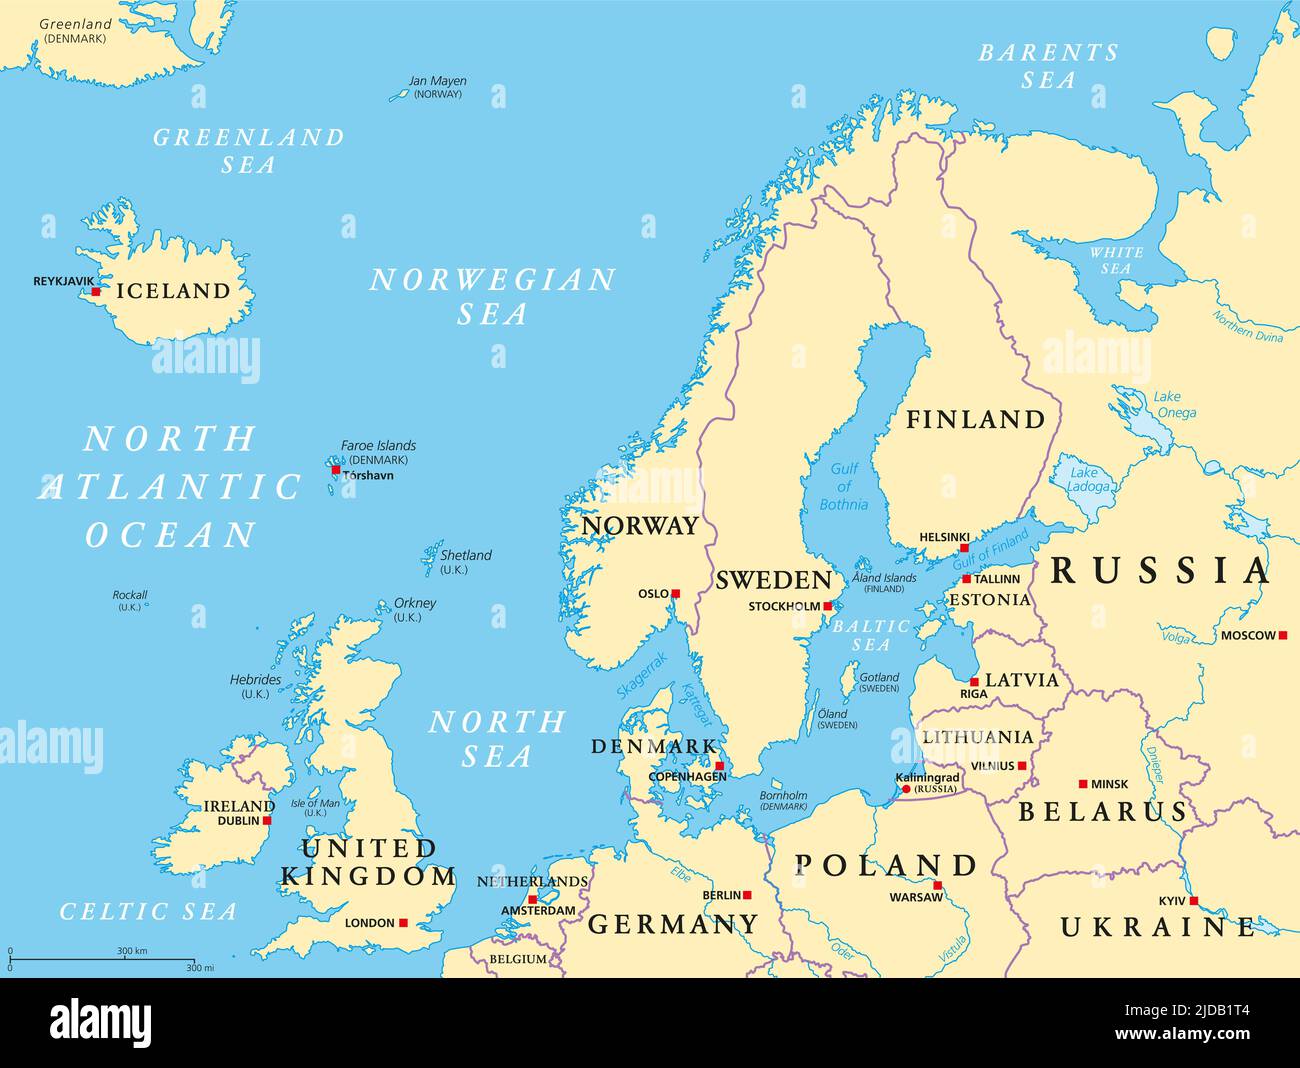 Europa settentrionale, mappa politica. Isole britanniche, Fennoscandia, penisola dello Jutland, pianura baltica a est, e isole al largo della terraferma Europa. Foto Stock